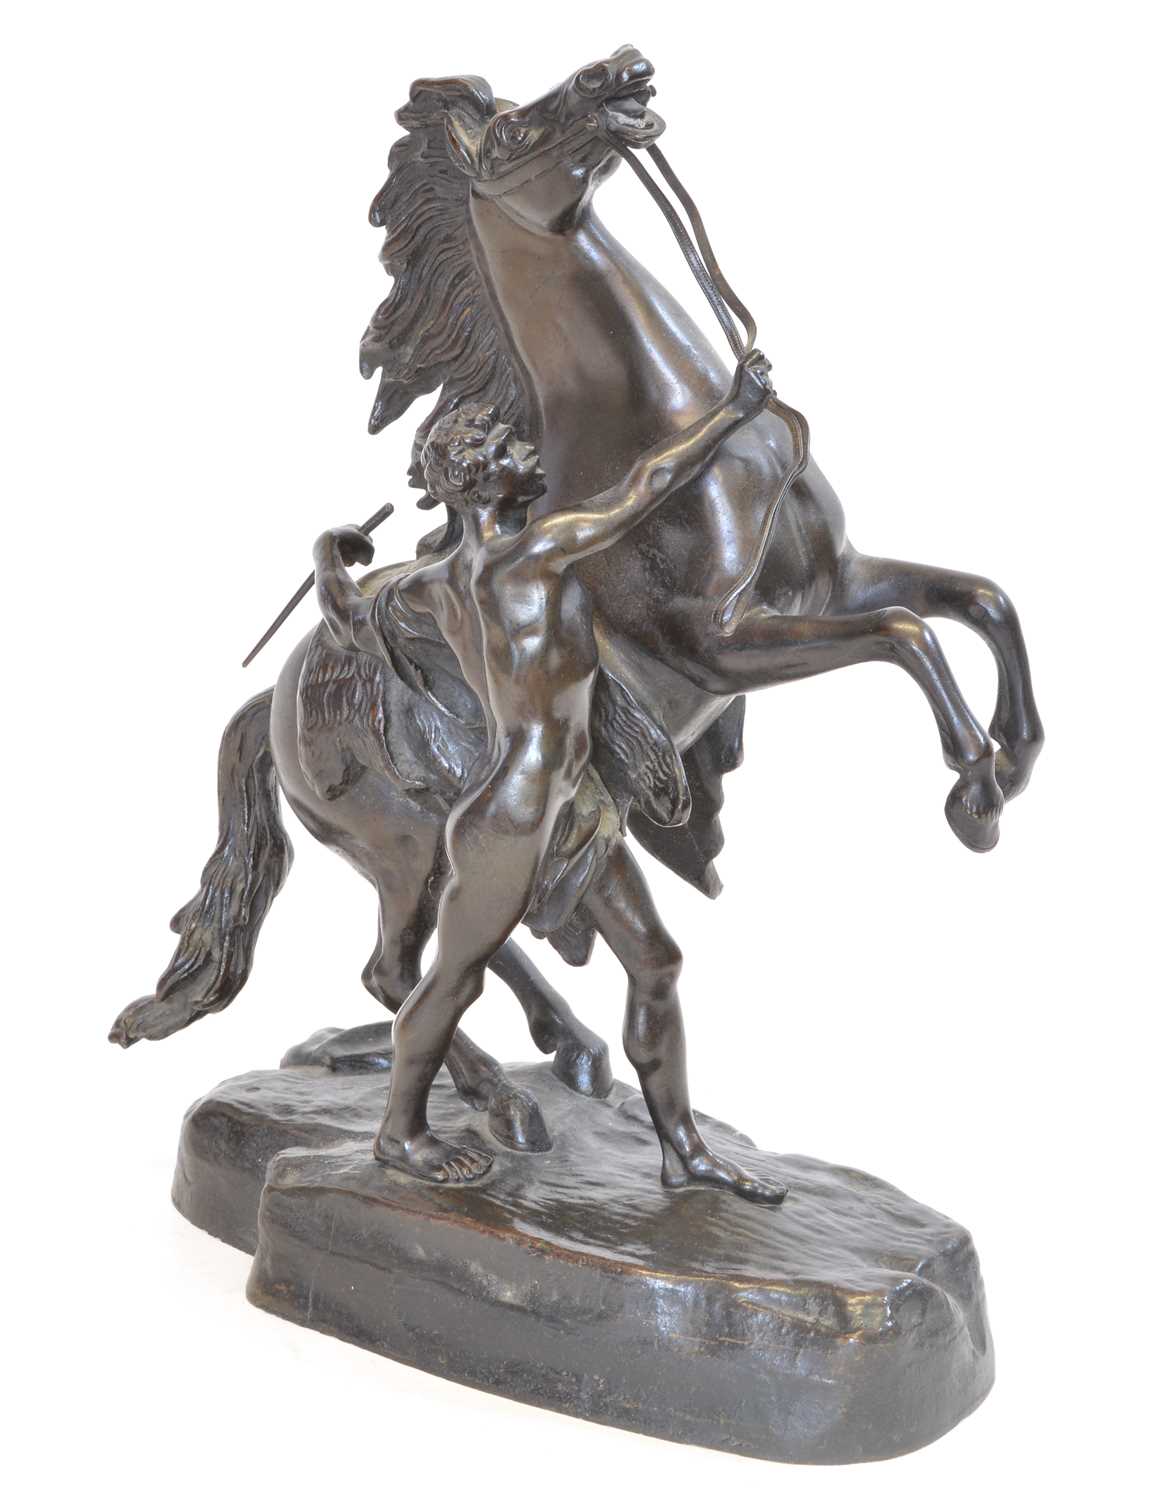 Lot Marley Horse Sculpture